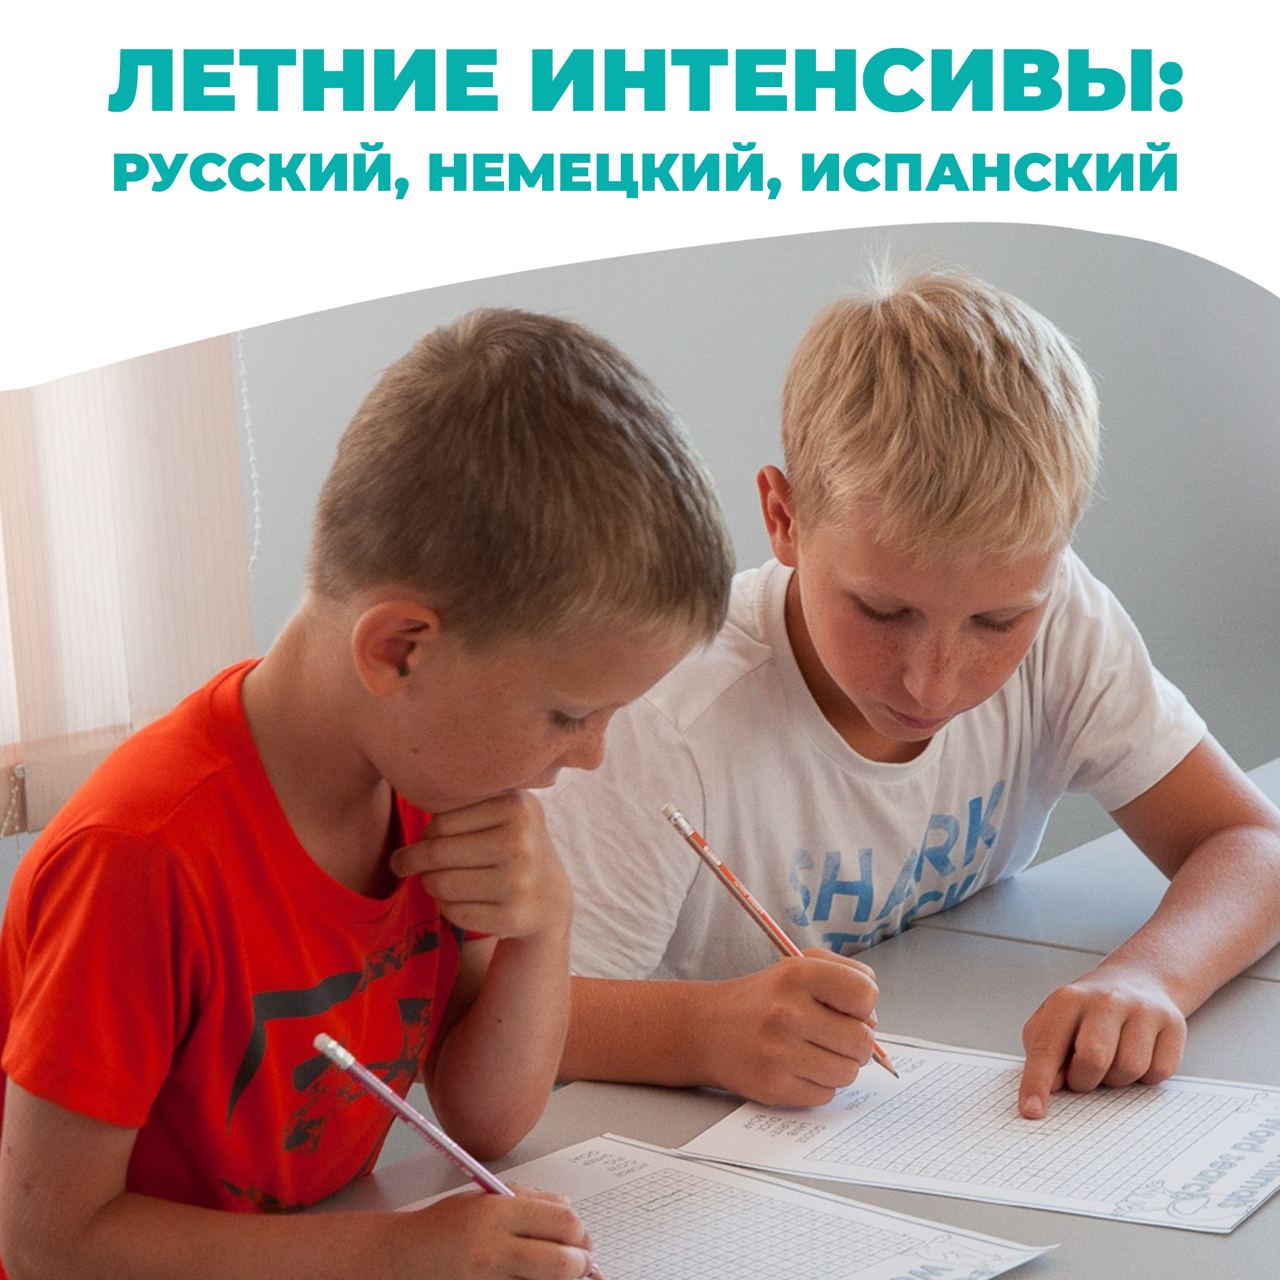 Интенсив по русскому. Летний интенсив по русскому языку для школьников.